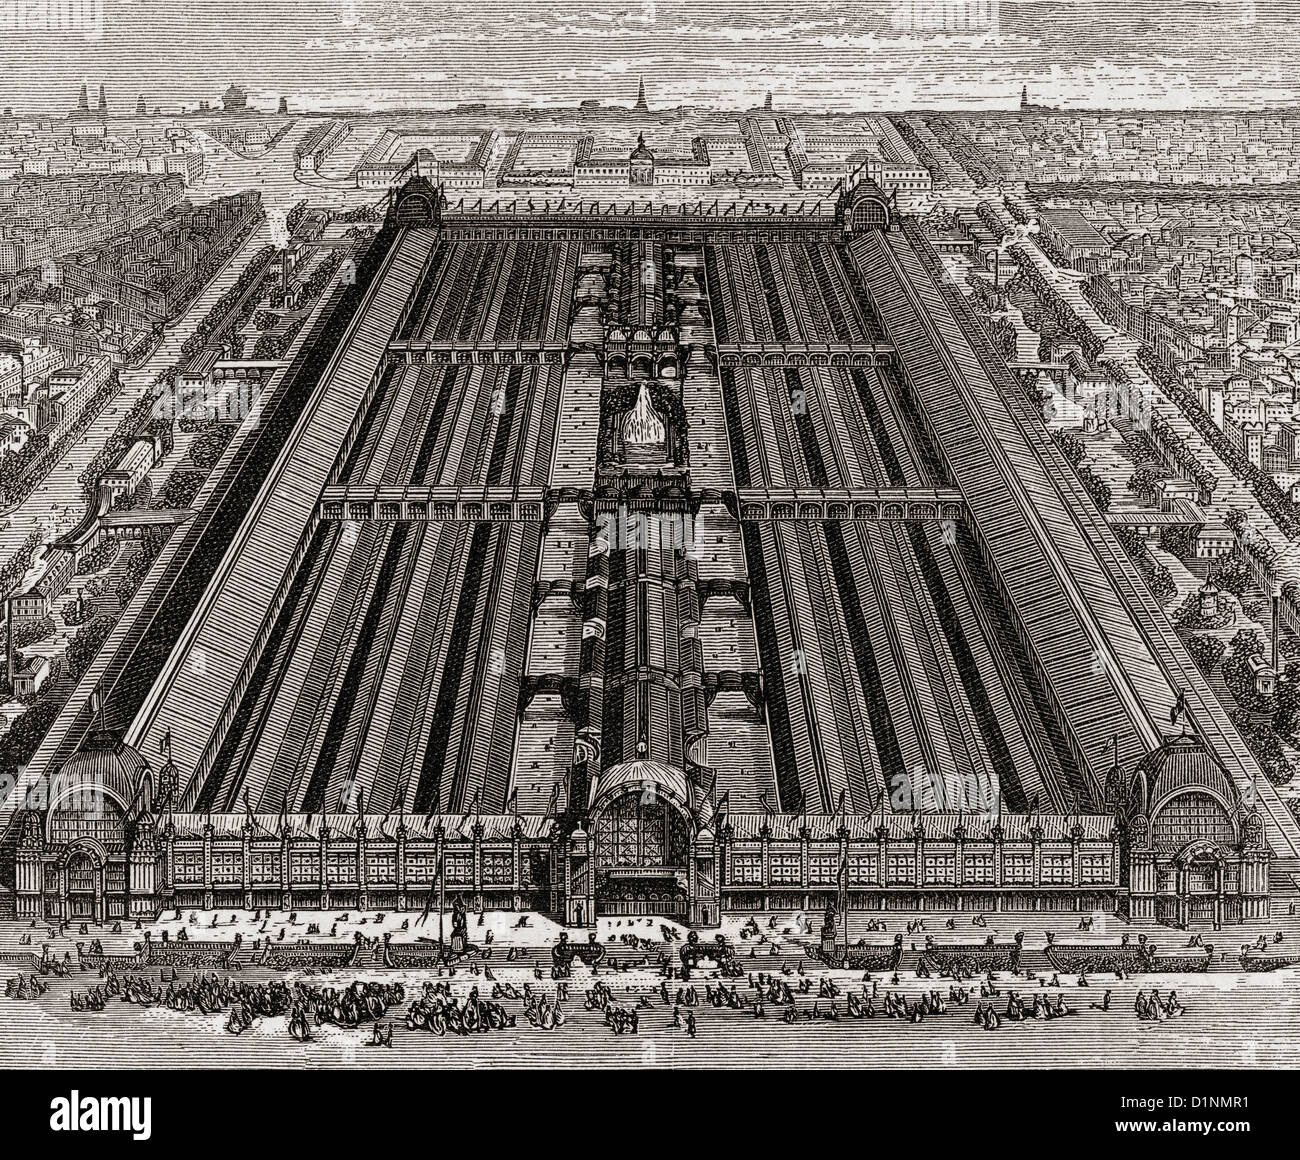 Les bâtiments du Champ de Mars, Paris, France au cours de l'Exposition Universelle de Paris de 1878. Banque D'Images